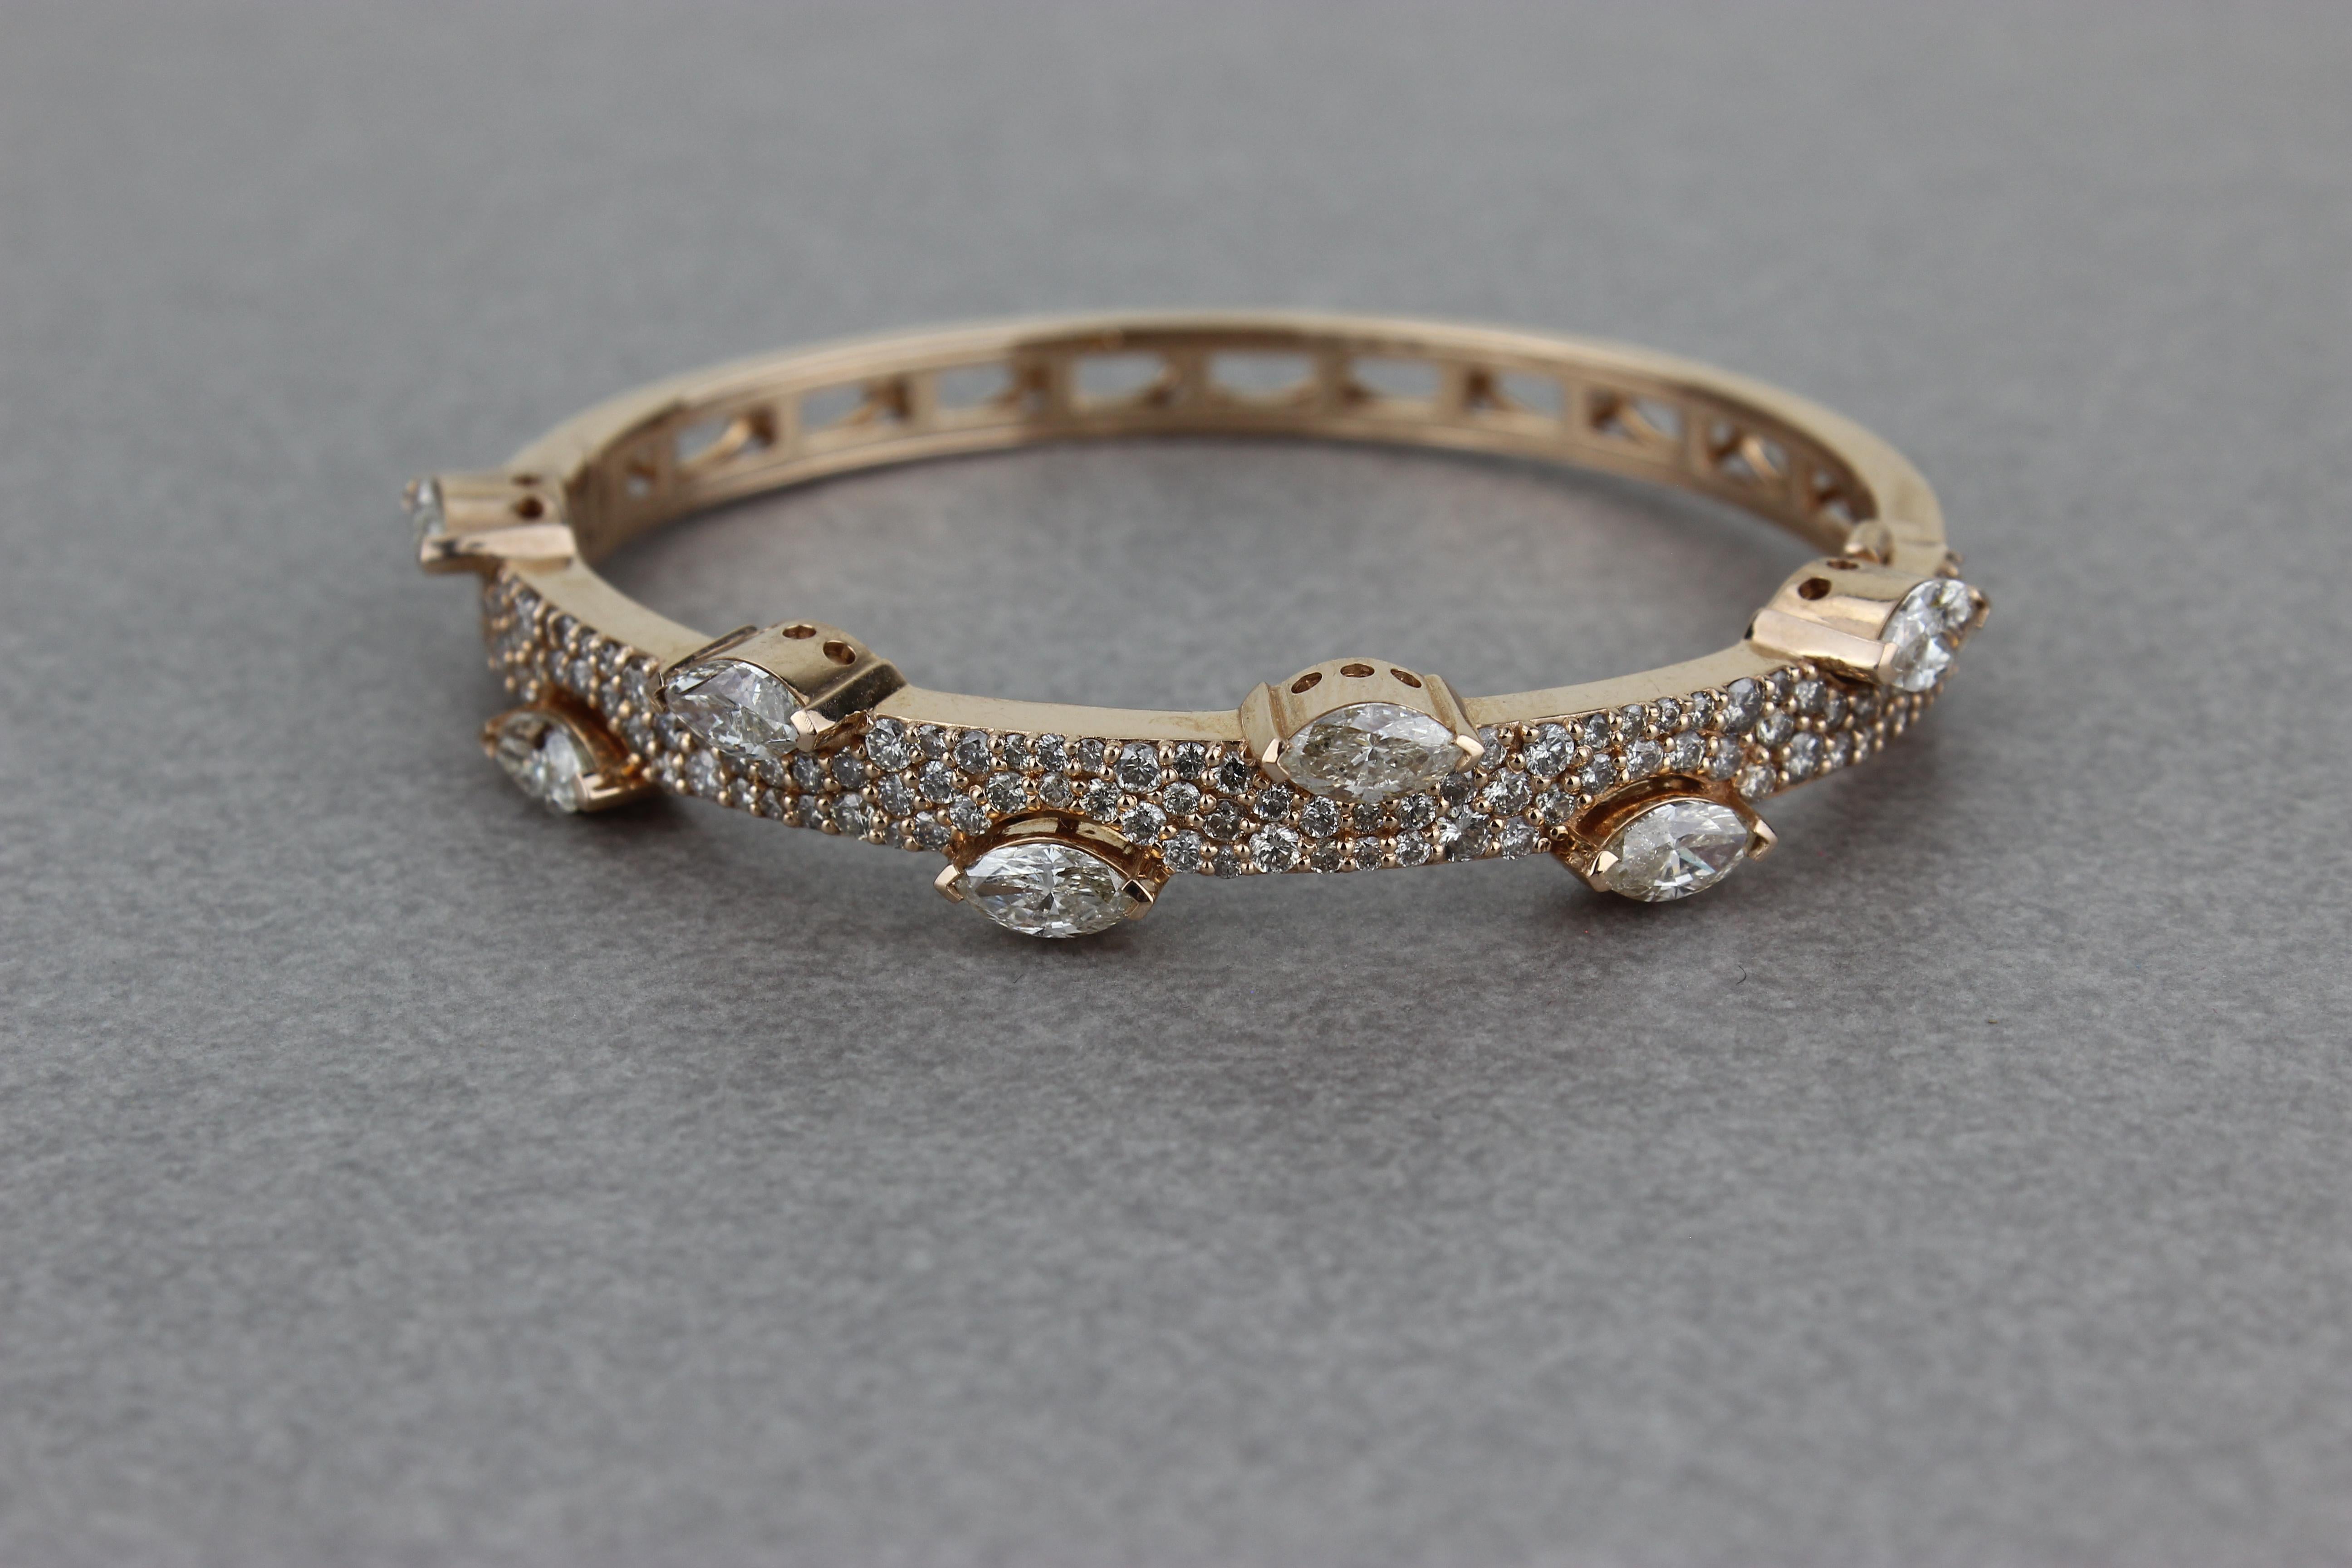 Das Marquise Diamonds Half Bracelet ist ein luxuriöses und elegantes Schmuckstück mit marquiseförmigen Diamanten, die in massivem 18-karätigem Gold gefasst sind. Die Diamanten sind in einem atemberaubenden Design angeordnet, das ihre einzigartige